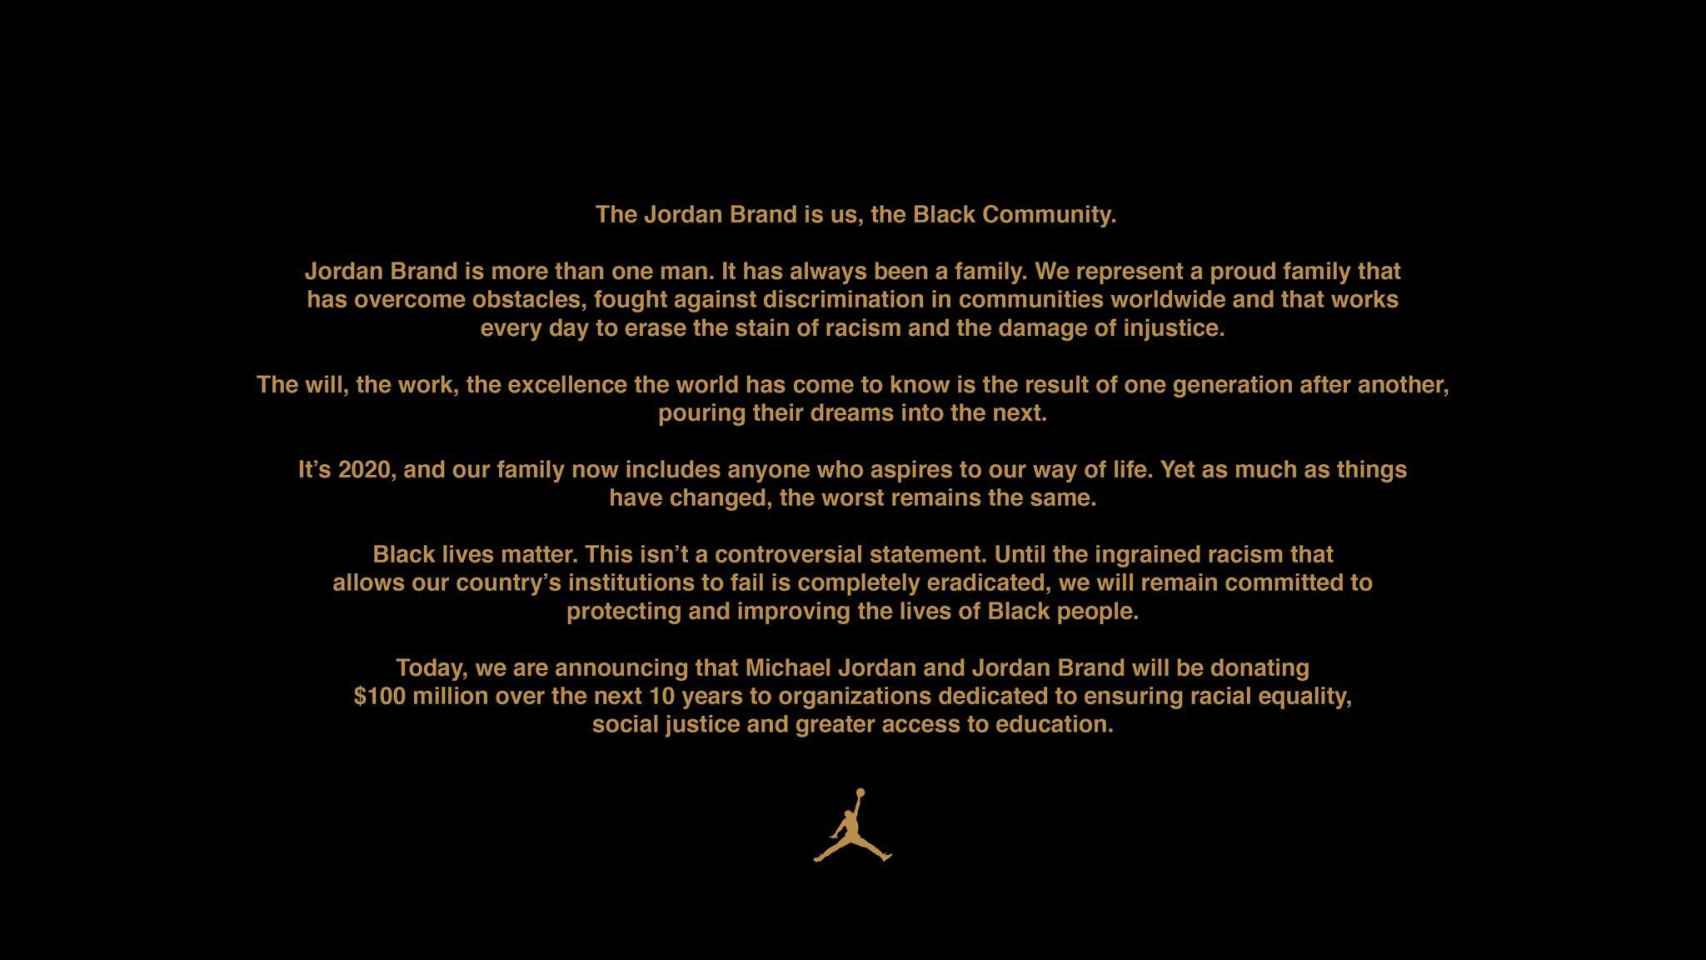 El comunicado de Jordan Brand con el anuncio comprometiendose con el Black Lives Matter